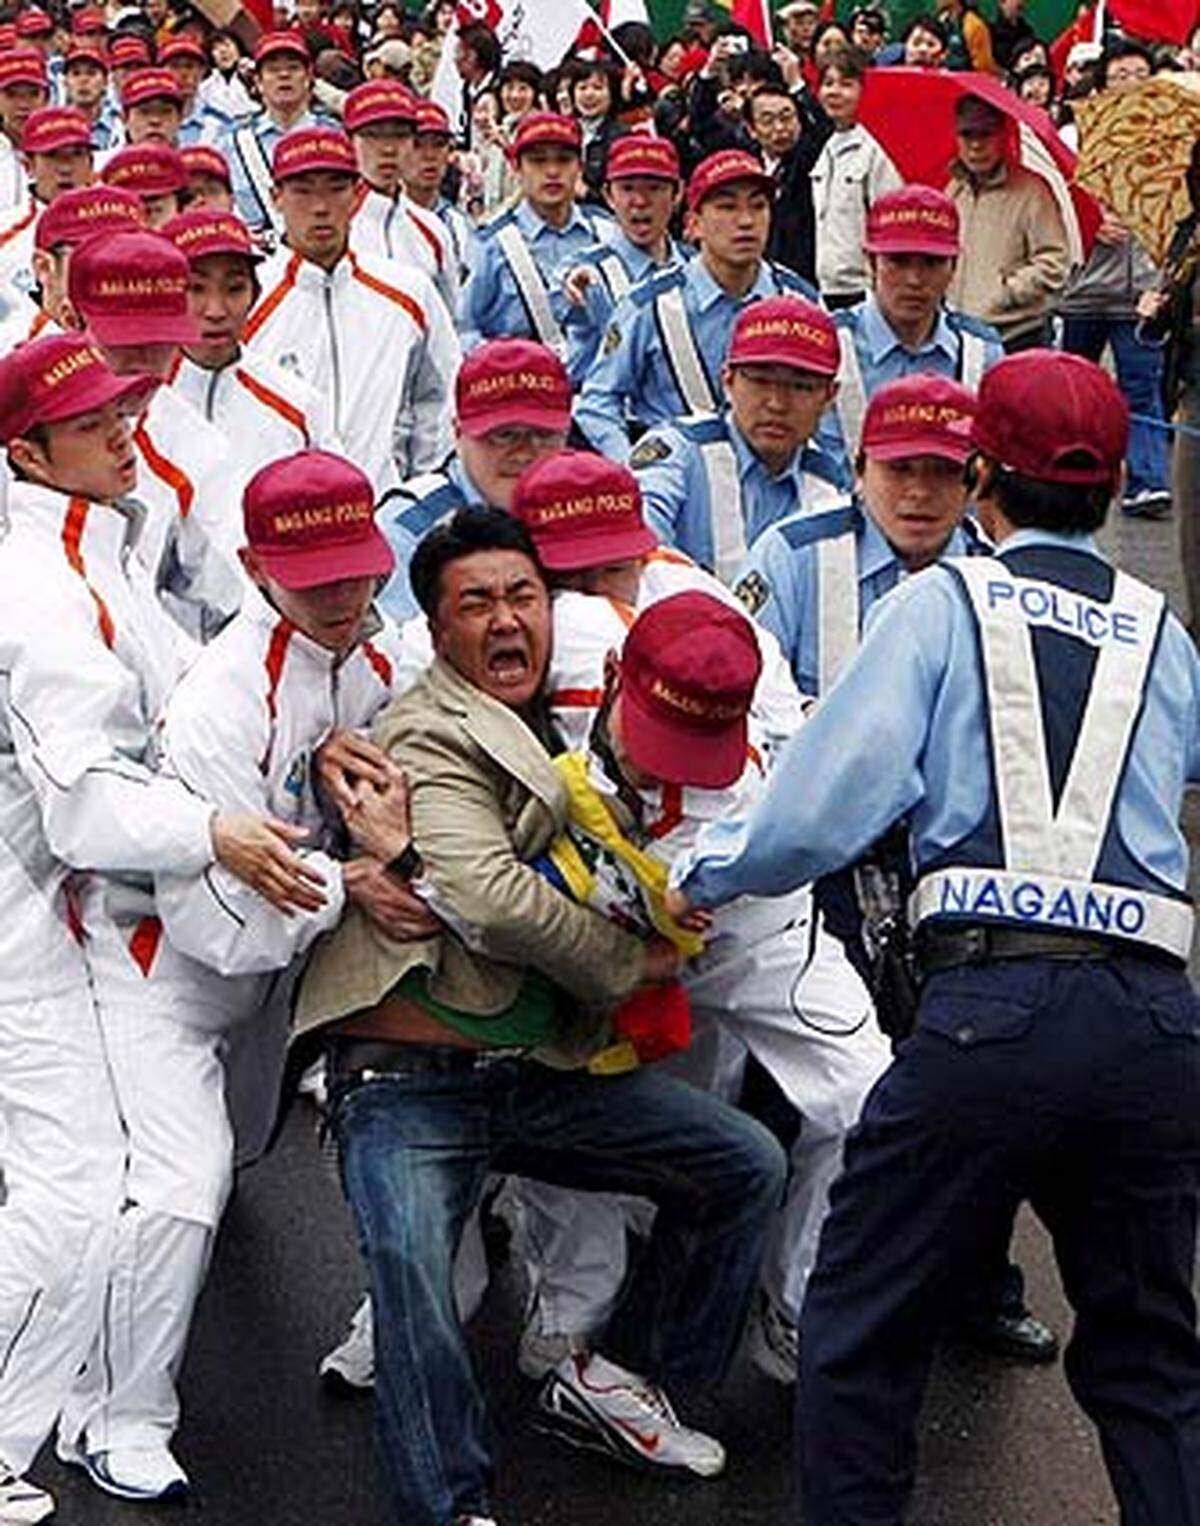 Beim Fackellauf im japanischen Nagano kommt es zu gewaltsamen Auseinandersetzungen zwischen pro-tibetischen, chinesischen und japanischen Demonstranten.